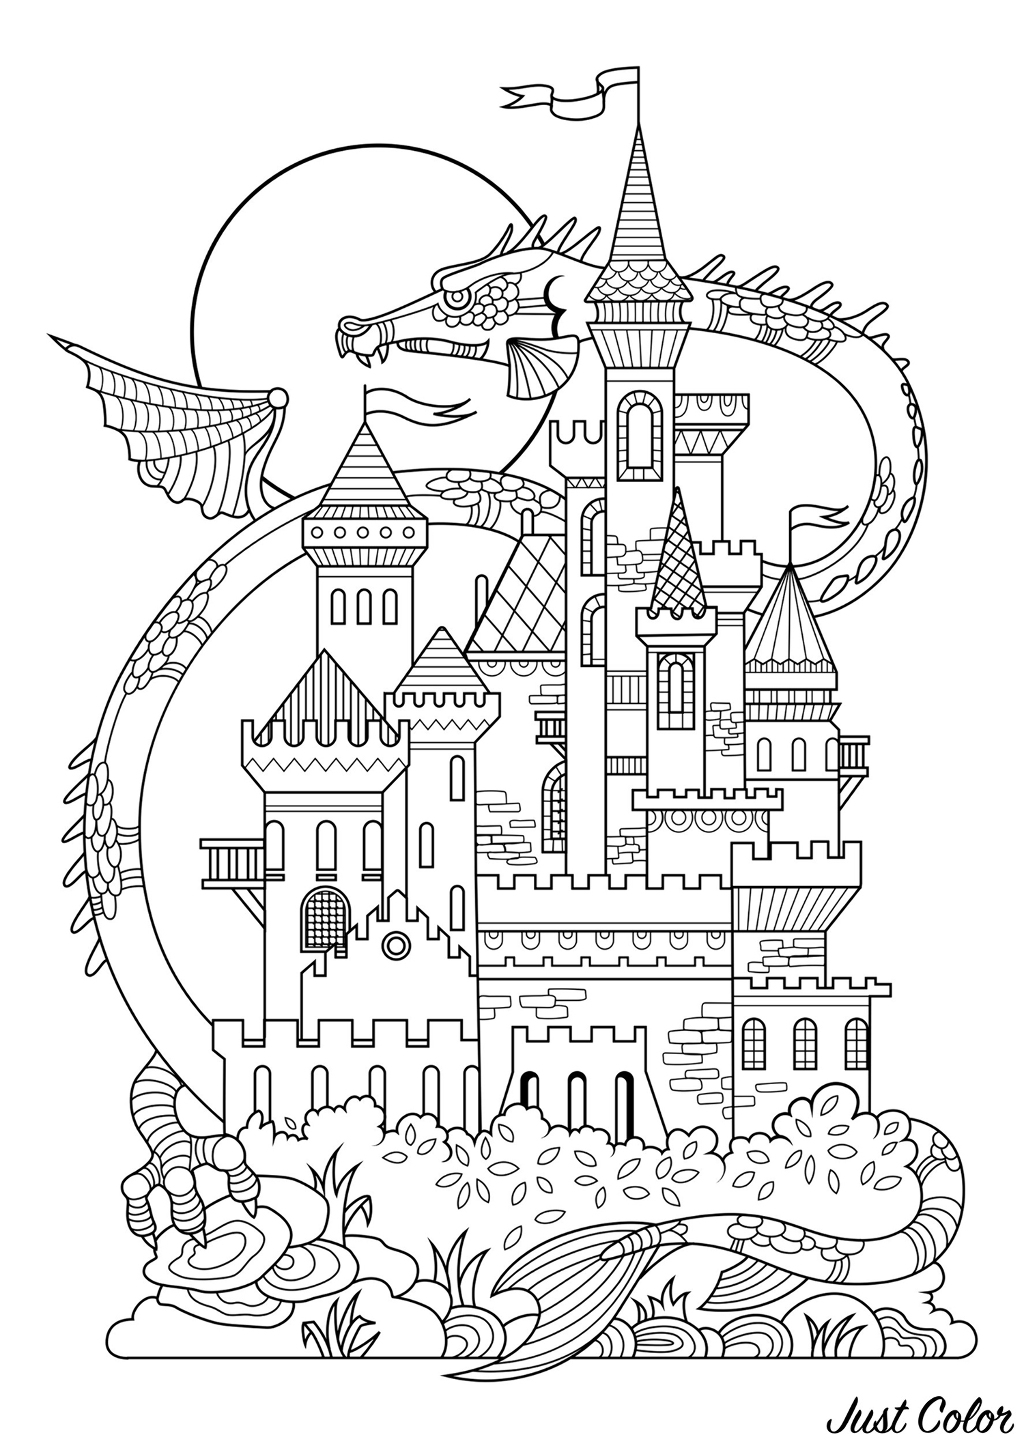 Joli château de conte de fées, avec en arrière plan un dragon géant !